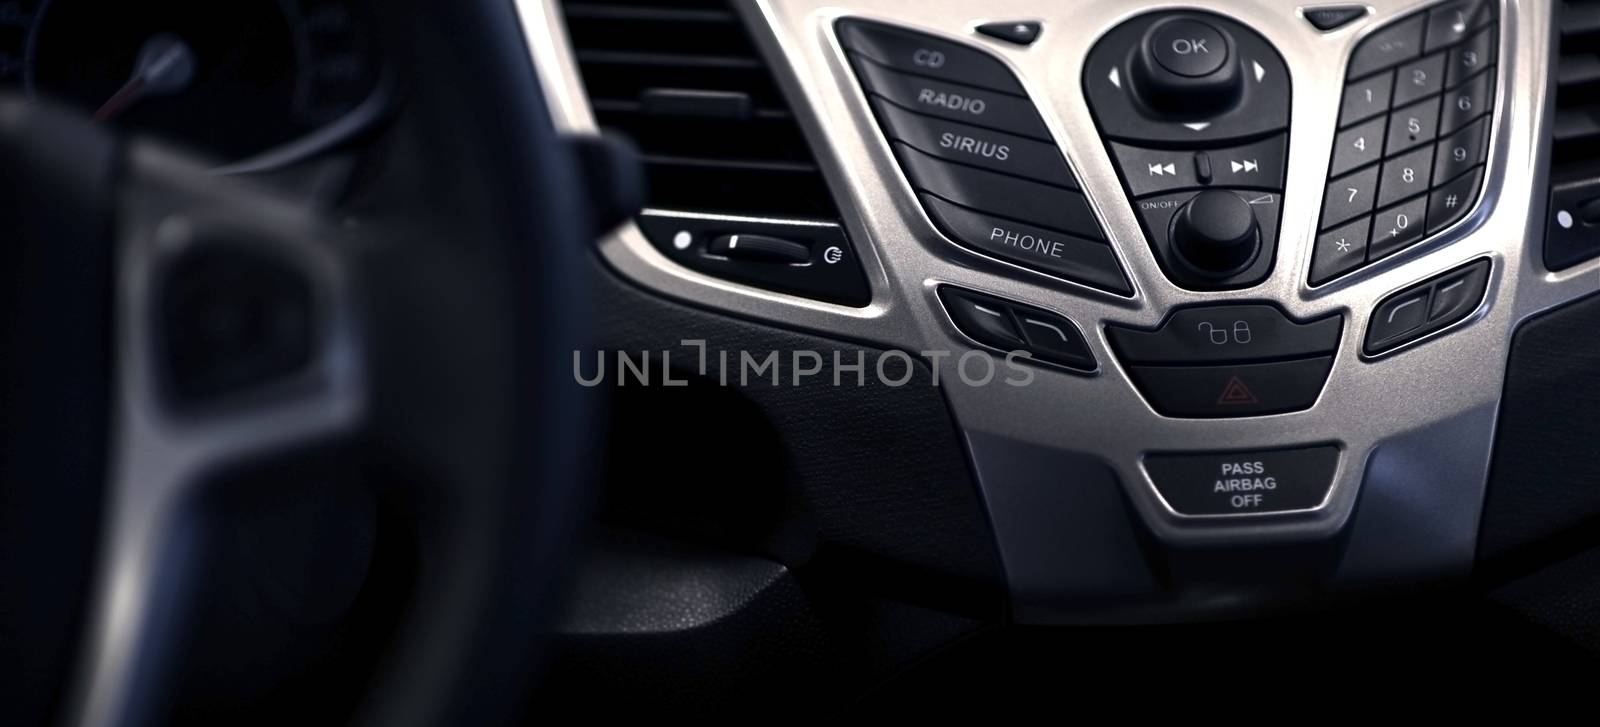 Multimedia Car Dash Panoramic Photography. Modern Dashboard Design.